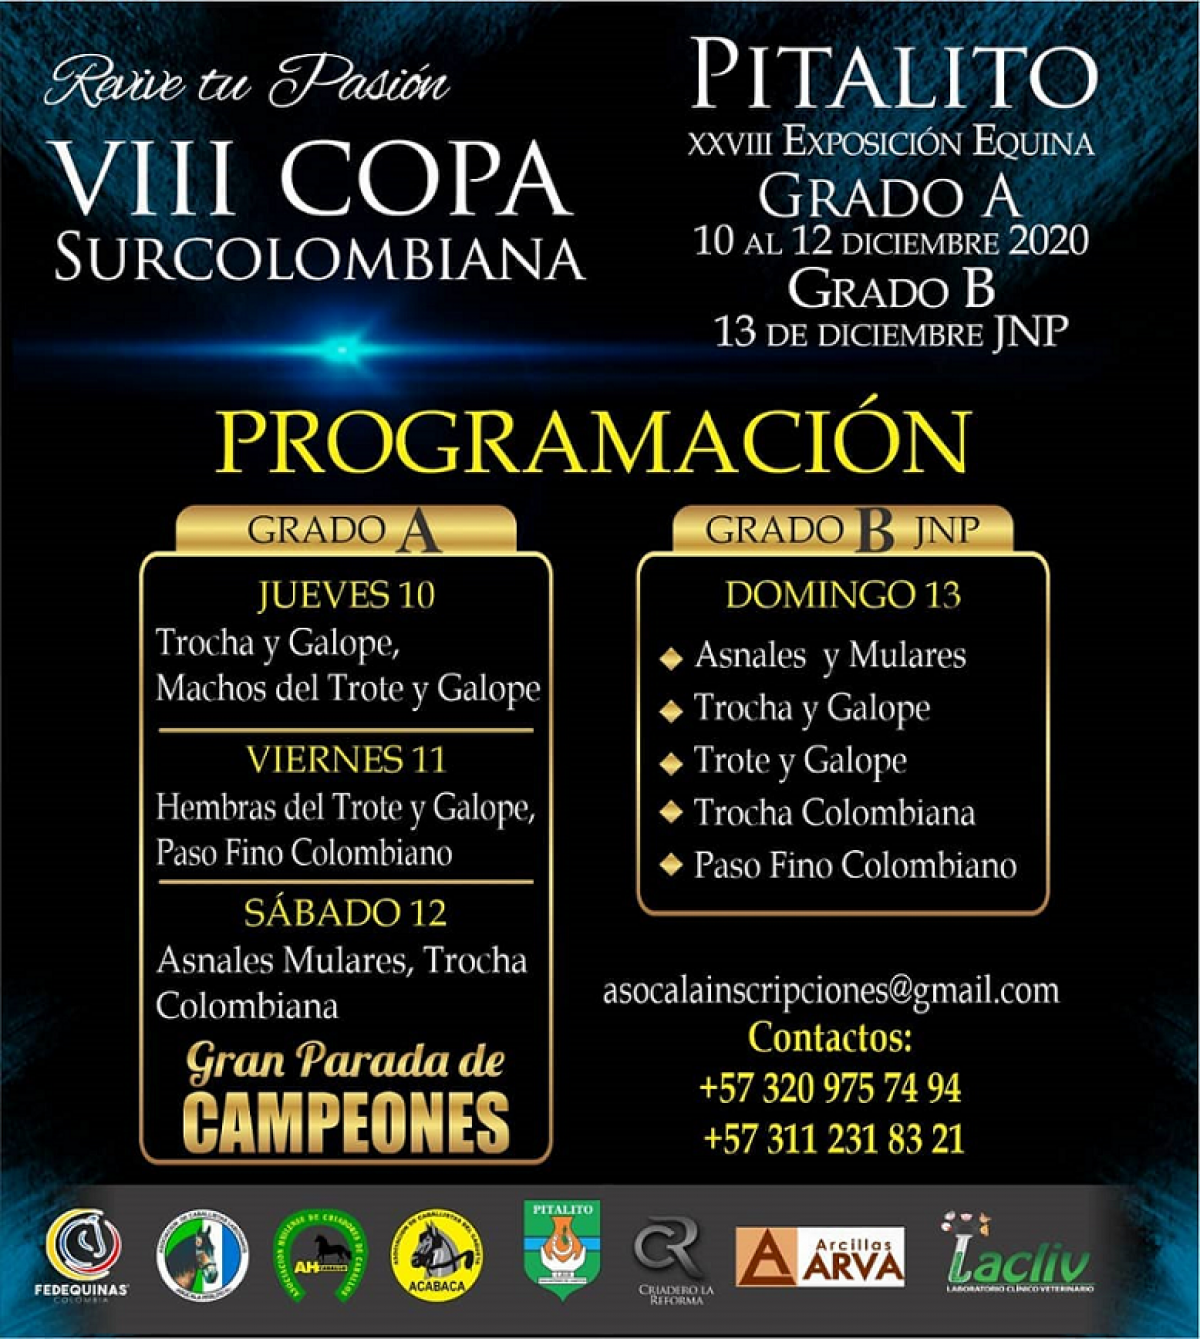 Programación VIII COPA SURCOLOMBIANA - Pitalito Grado A Los días 10, 11 y 12 de diciembre y Grado B JNP el día 13 de diciembre.